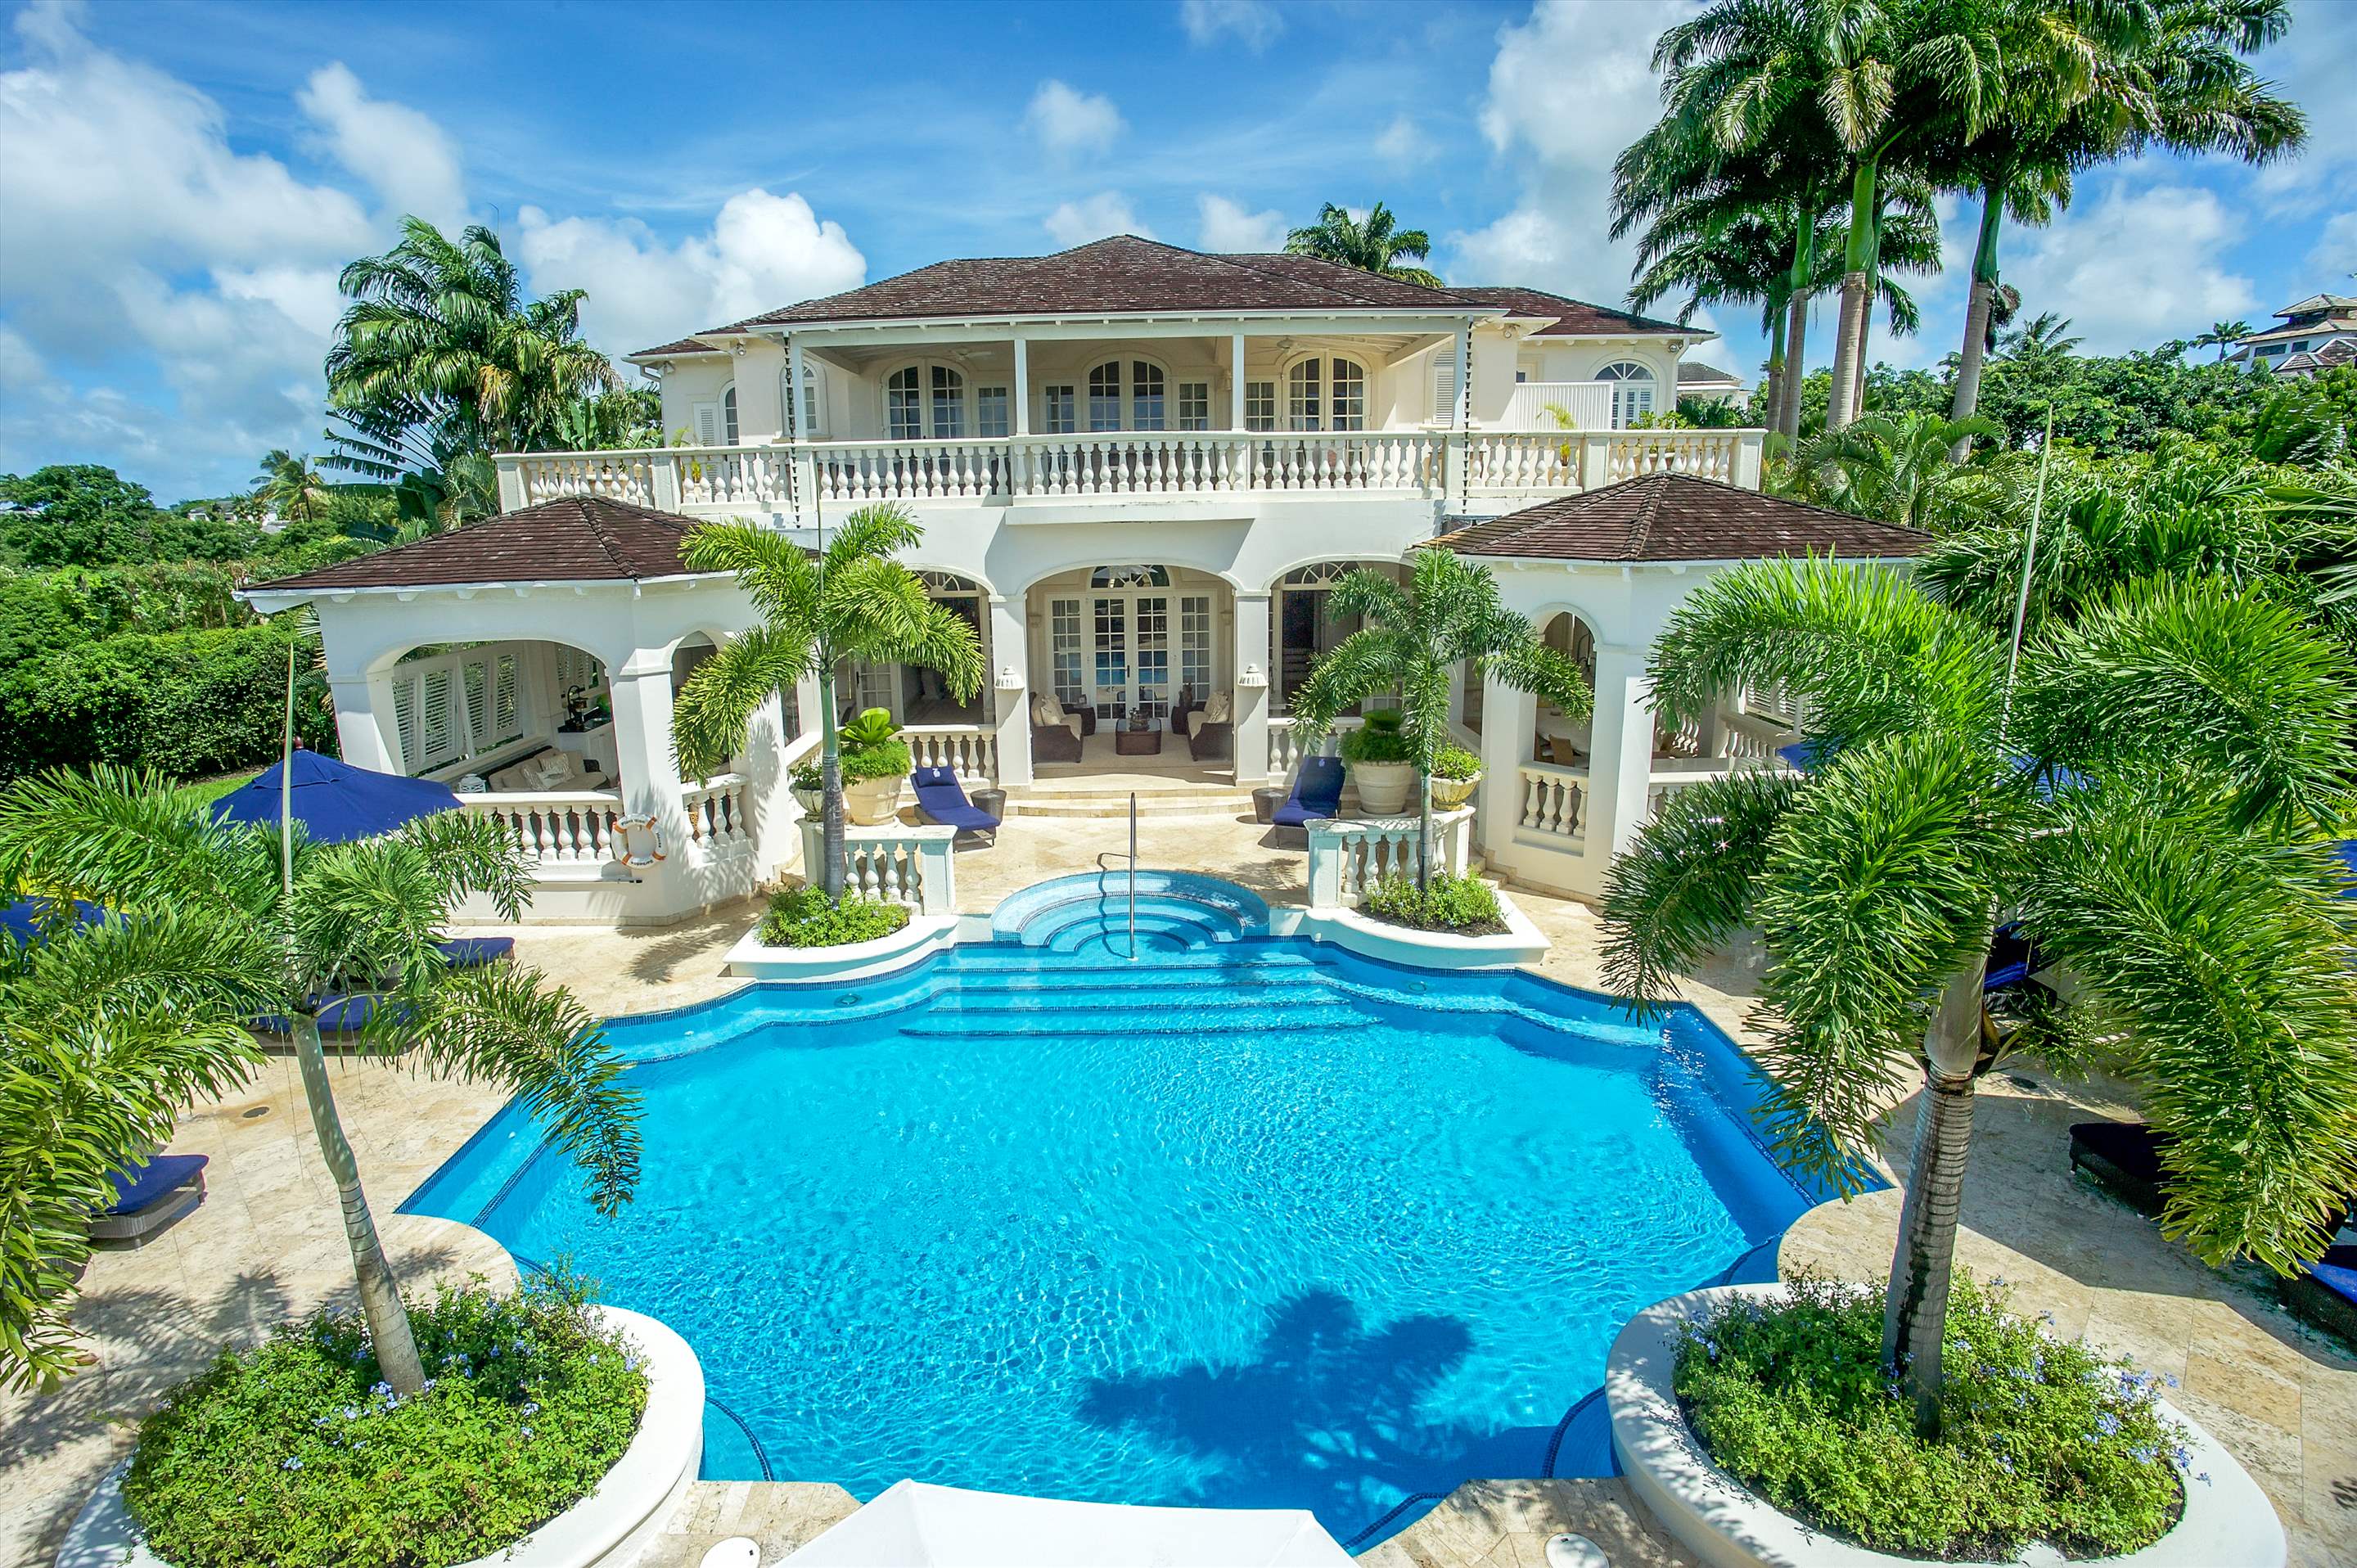 Plantation House, Royal Westmoreland, 4 bedroom, 4 bedroom villa in St. James & West Coast, Barbados Photo #1